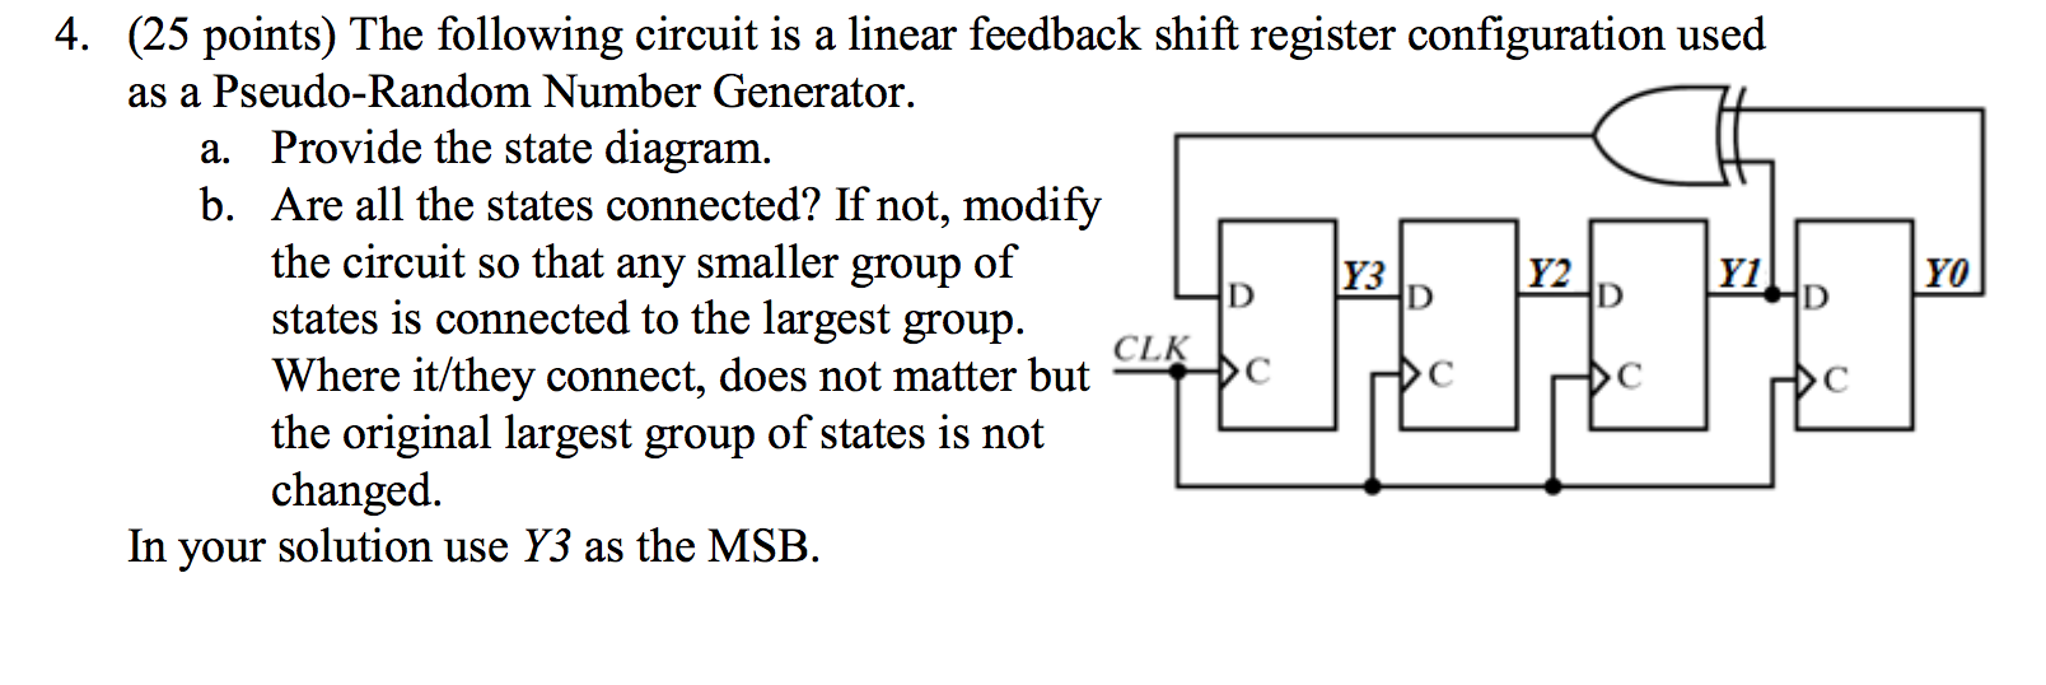 linear feedback shift register in c